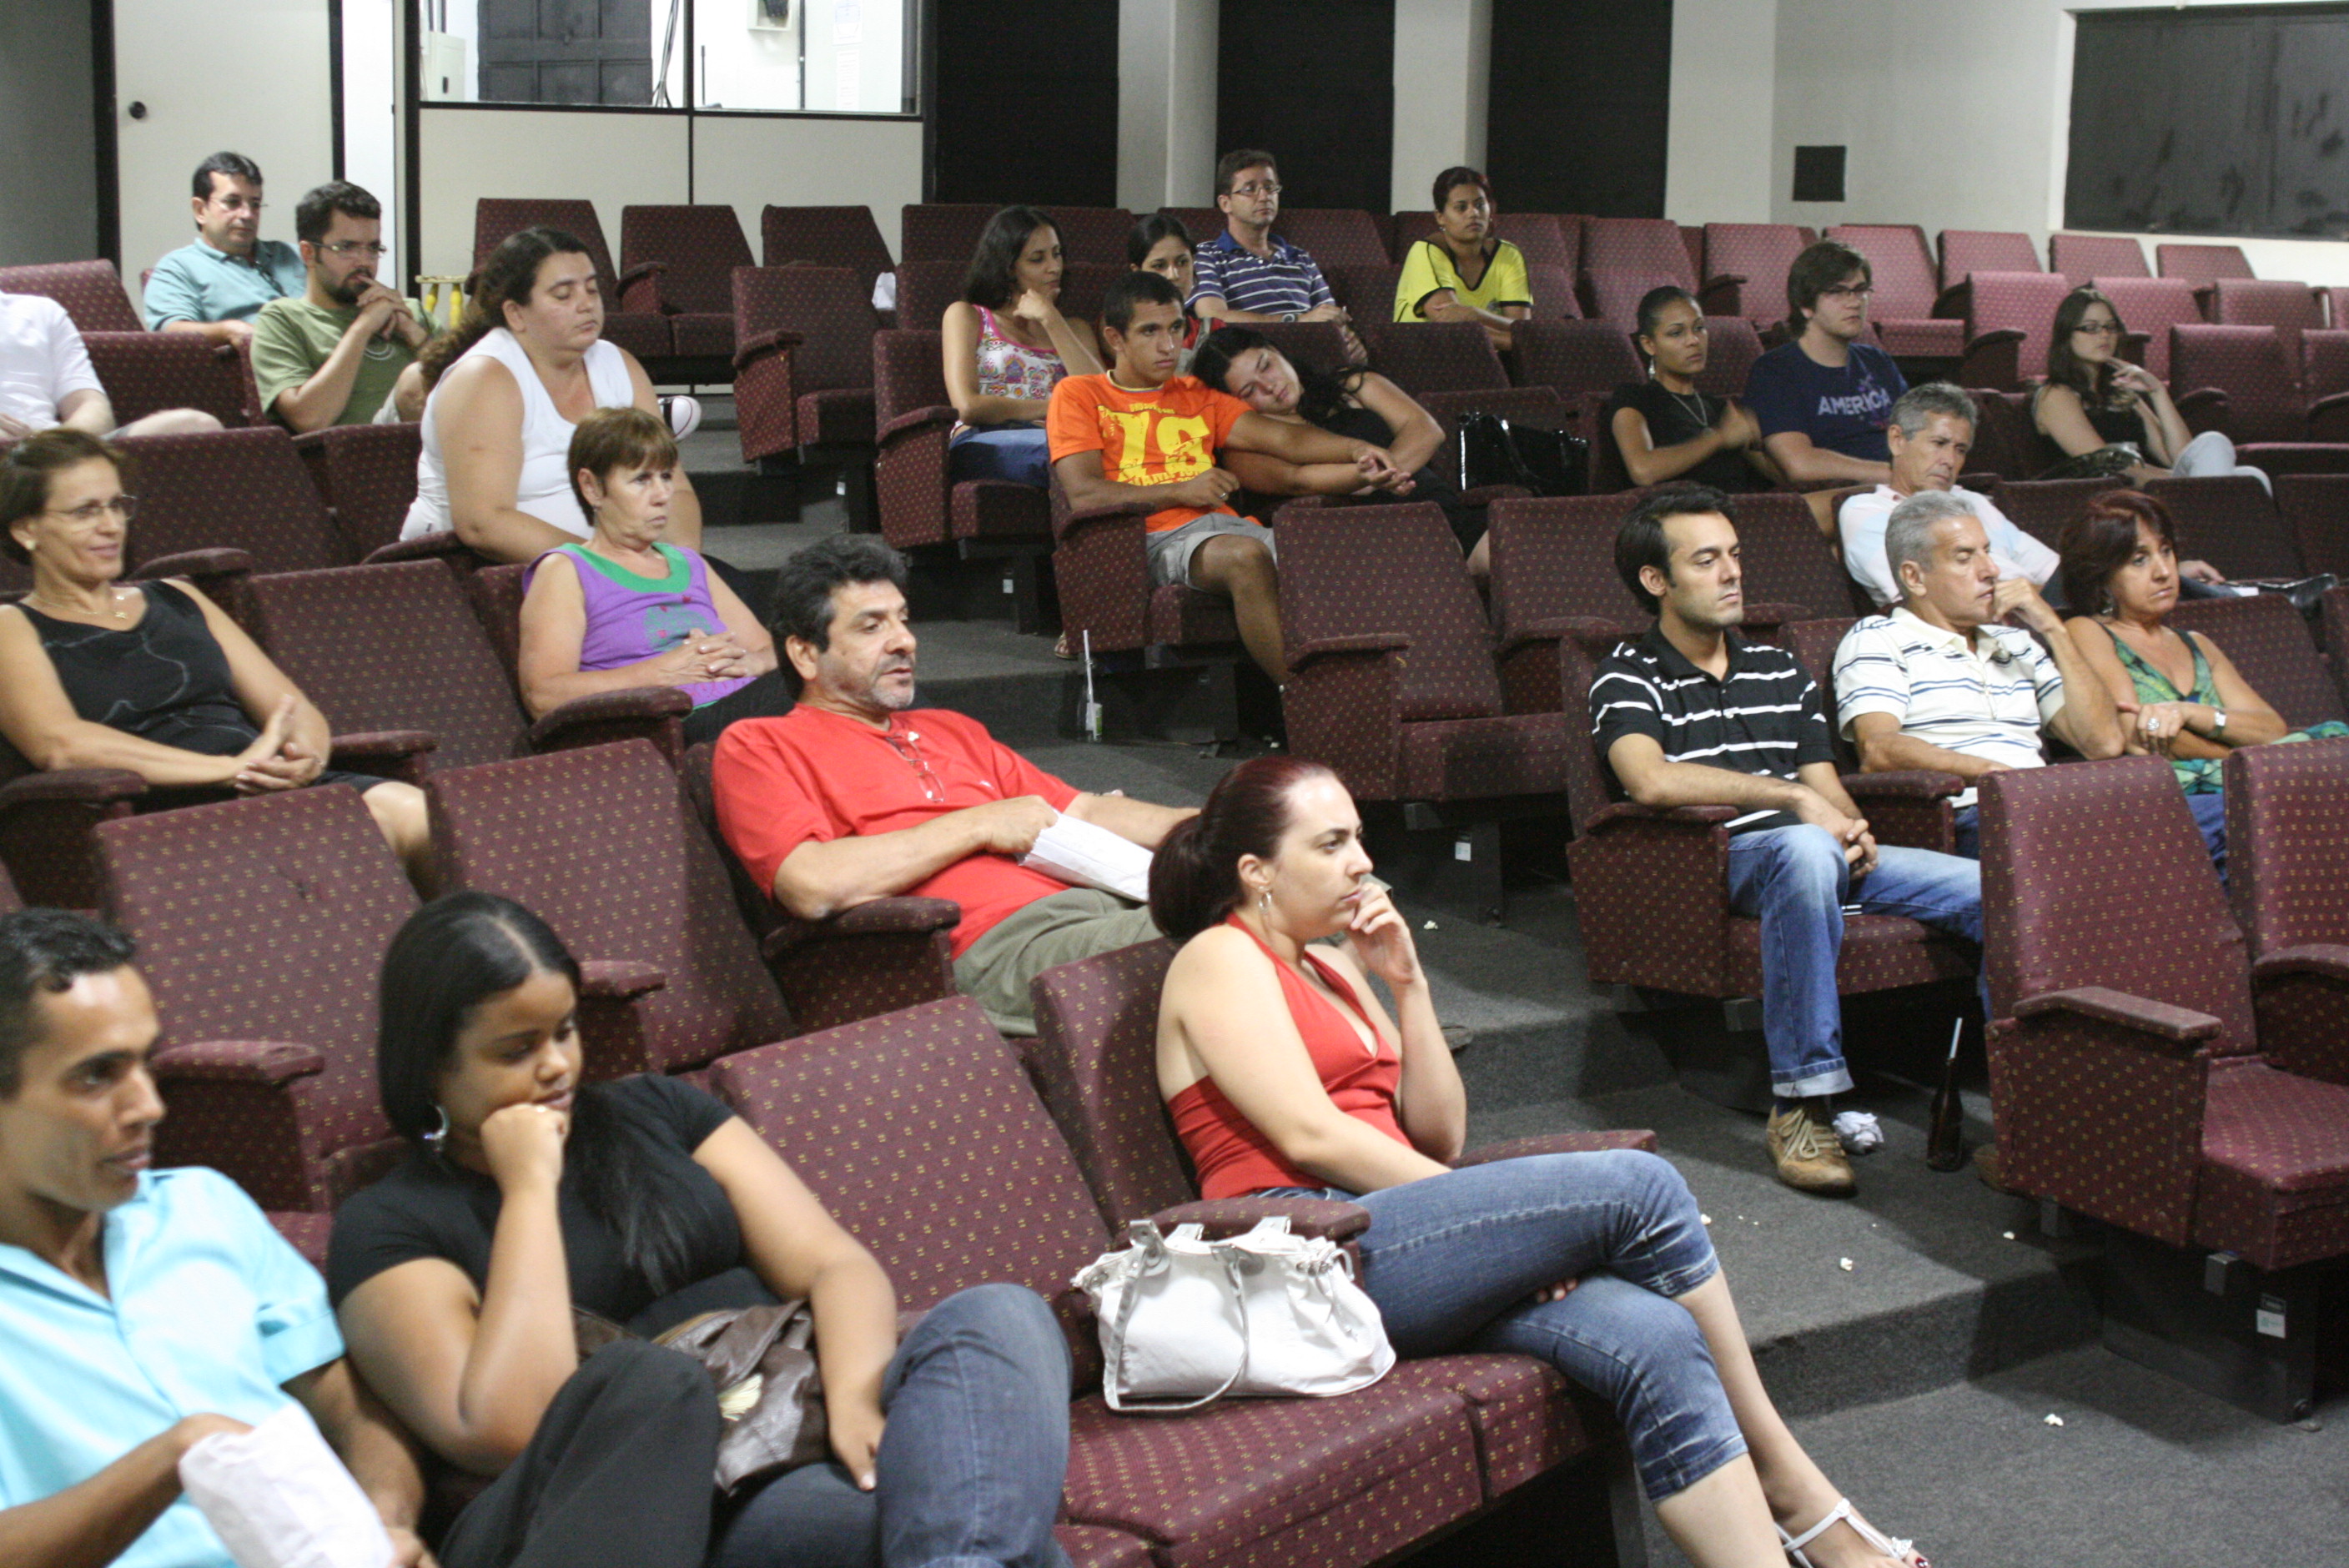 Público também participava do debate ao final do filme (Foto: Amauri Martineli)